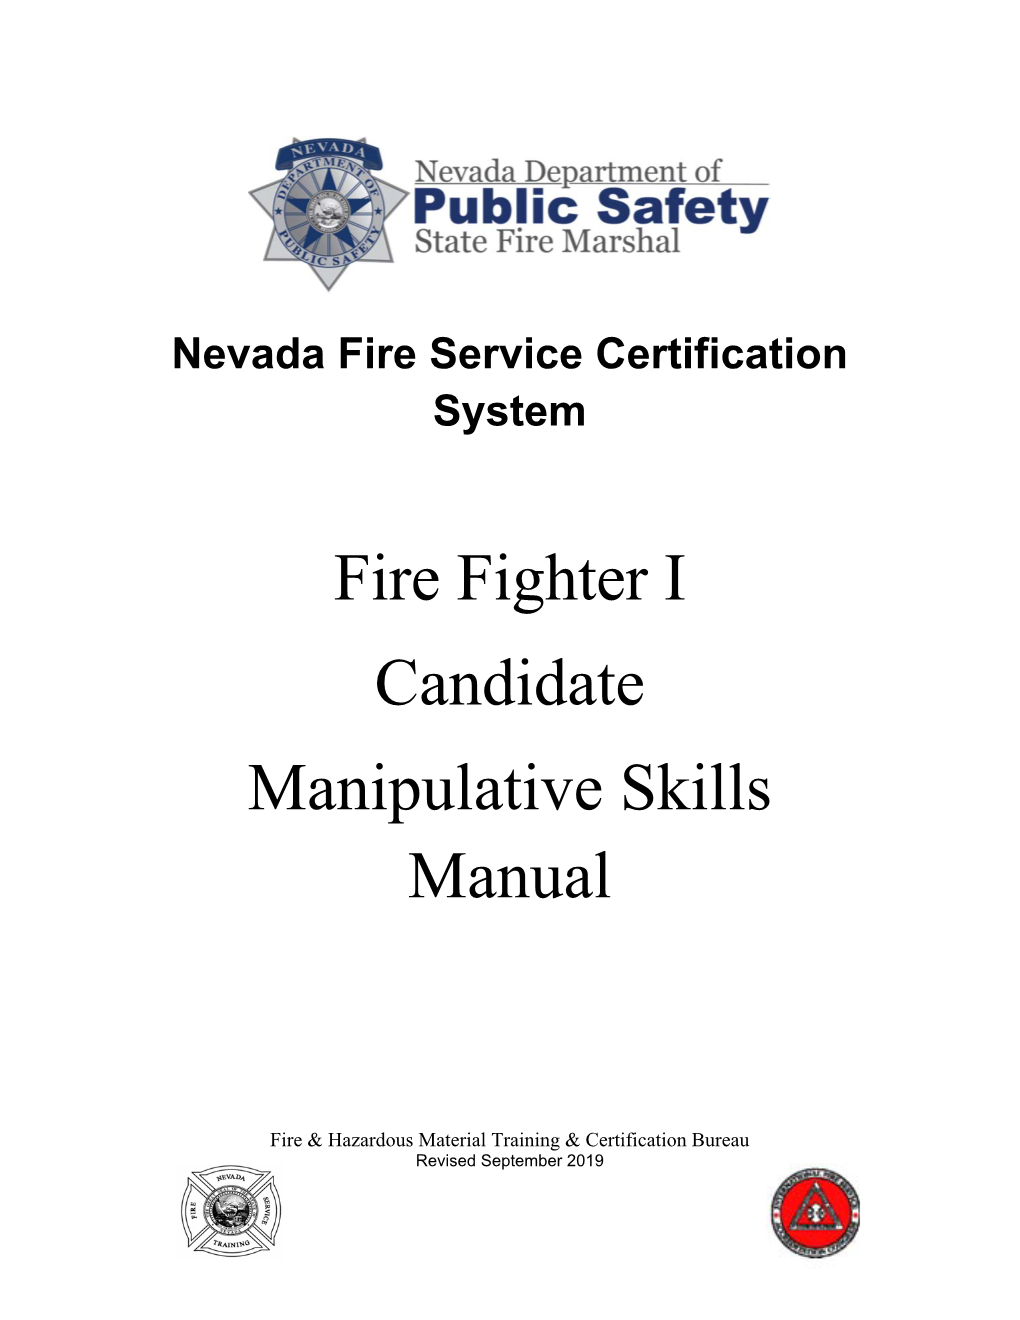 Fire Fighter I Candidate Manipulative Skills Manual